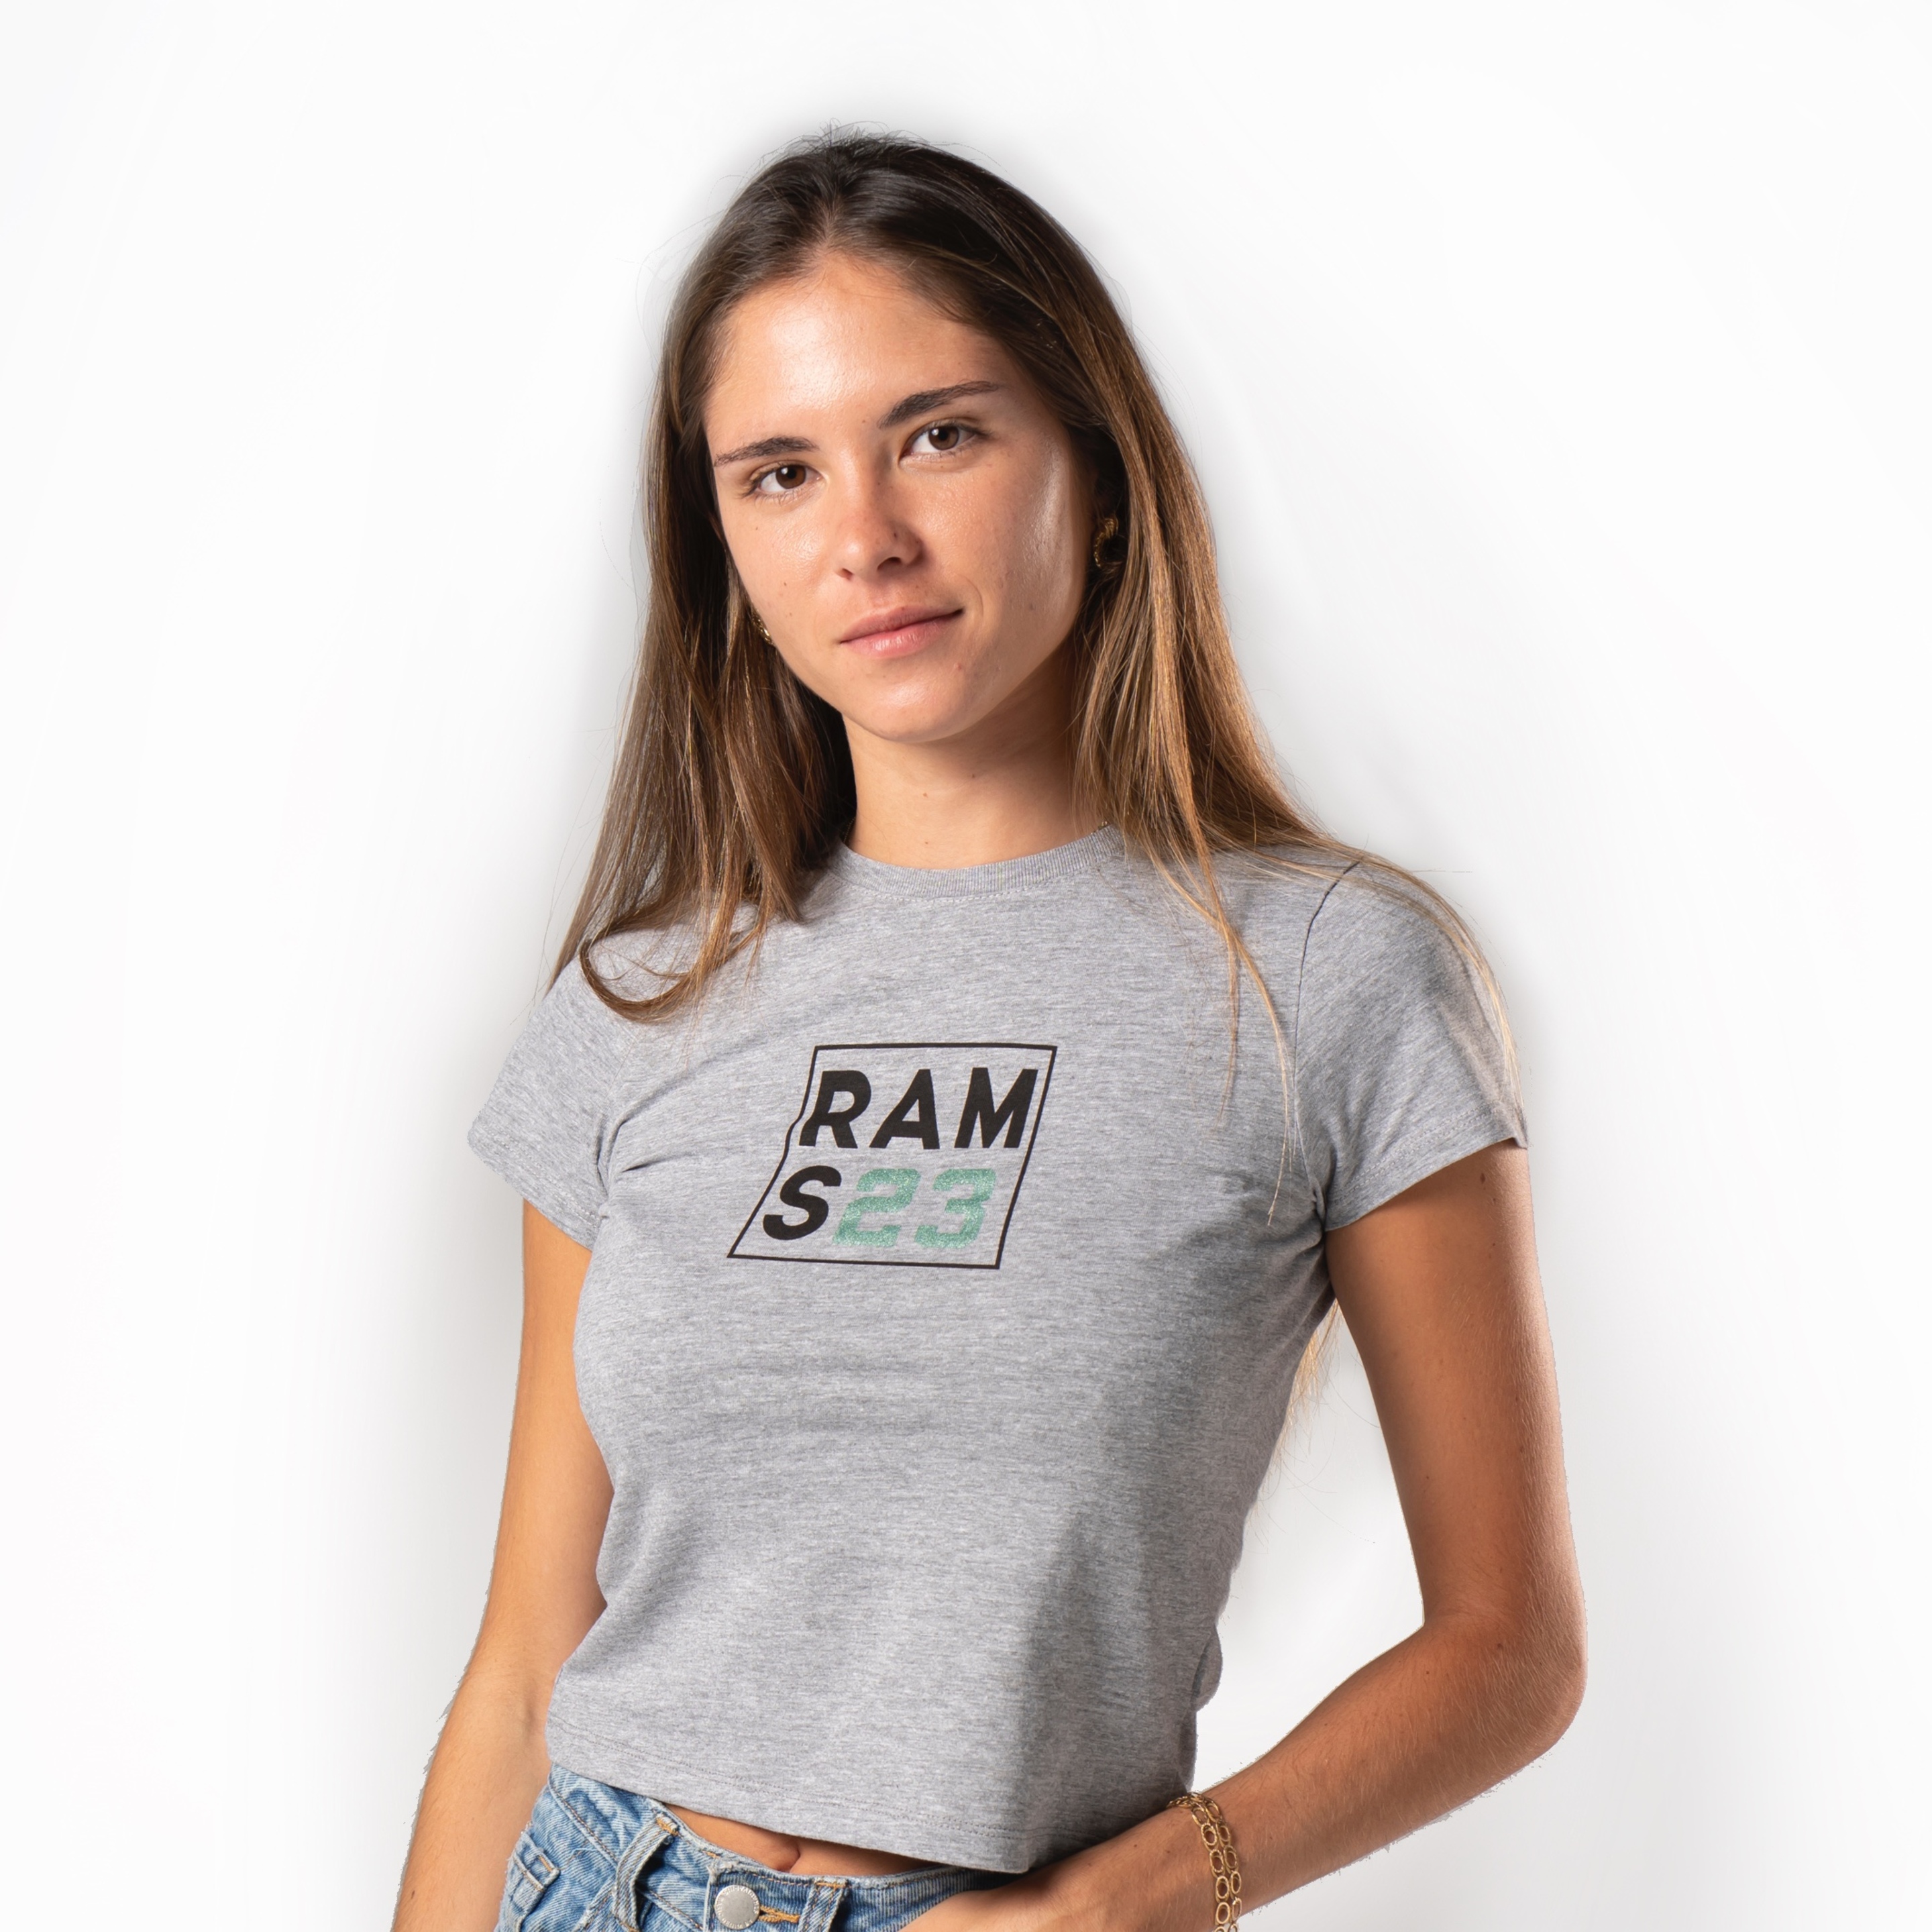 Camiseta Rams 23 Square - gris - 